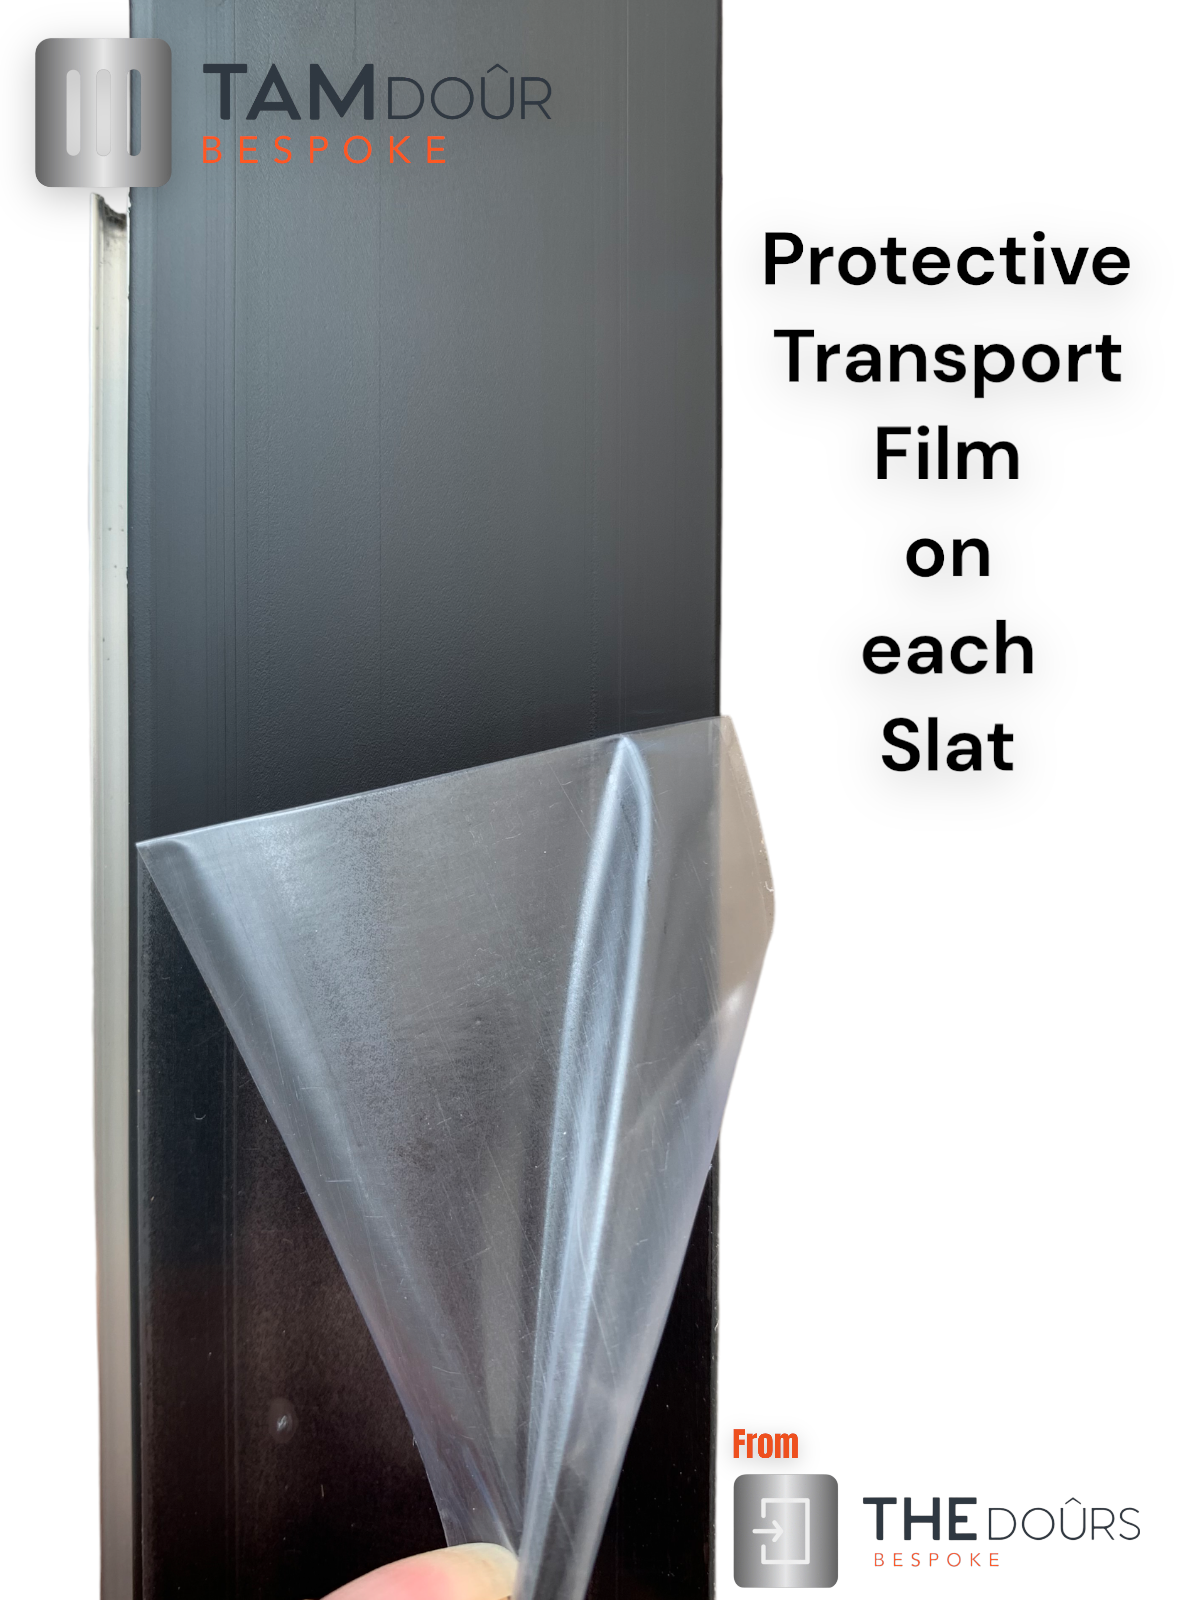 Kit de puerta Tambour Silver - MANGO NEGRO 1500 mm a 2000 mm de altura